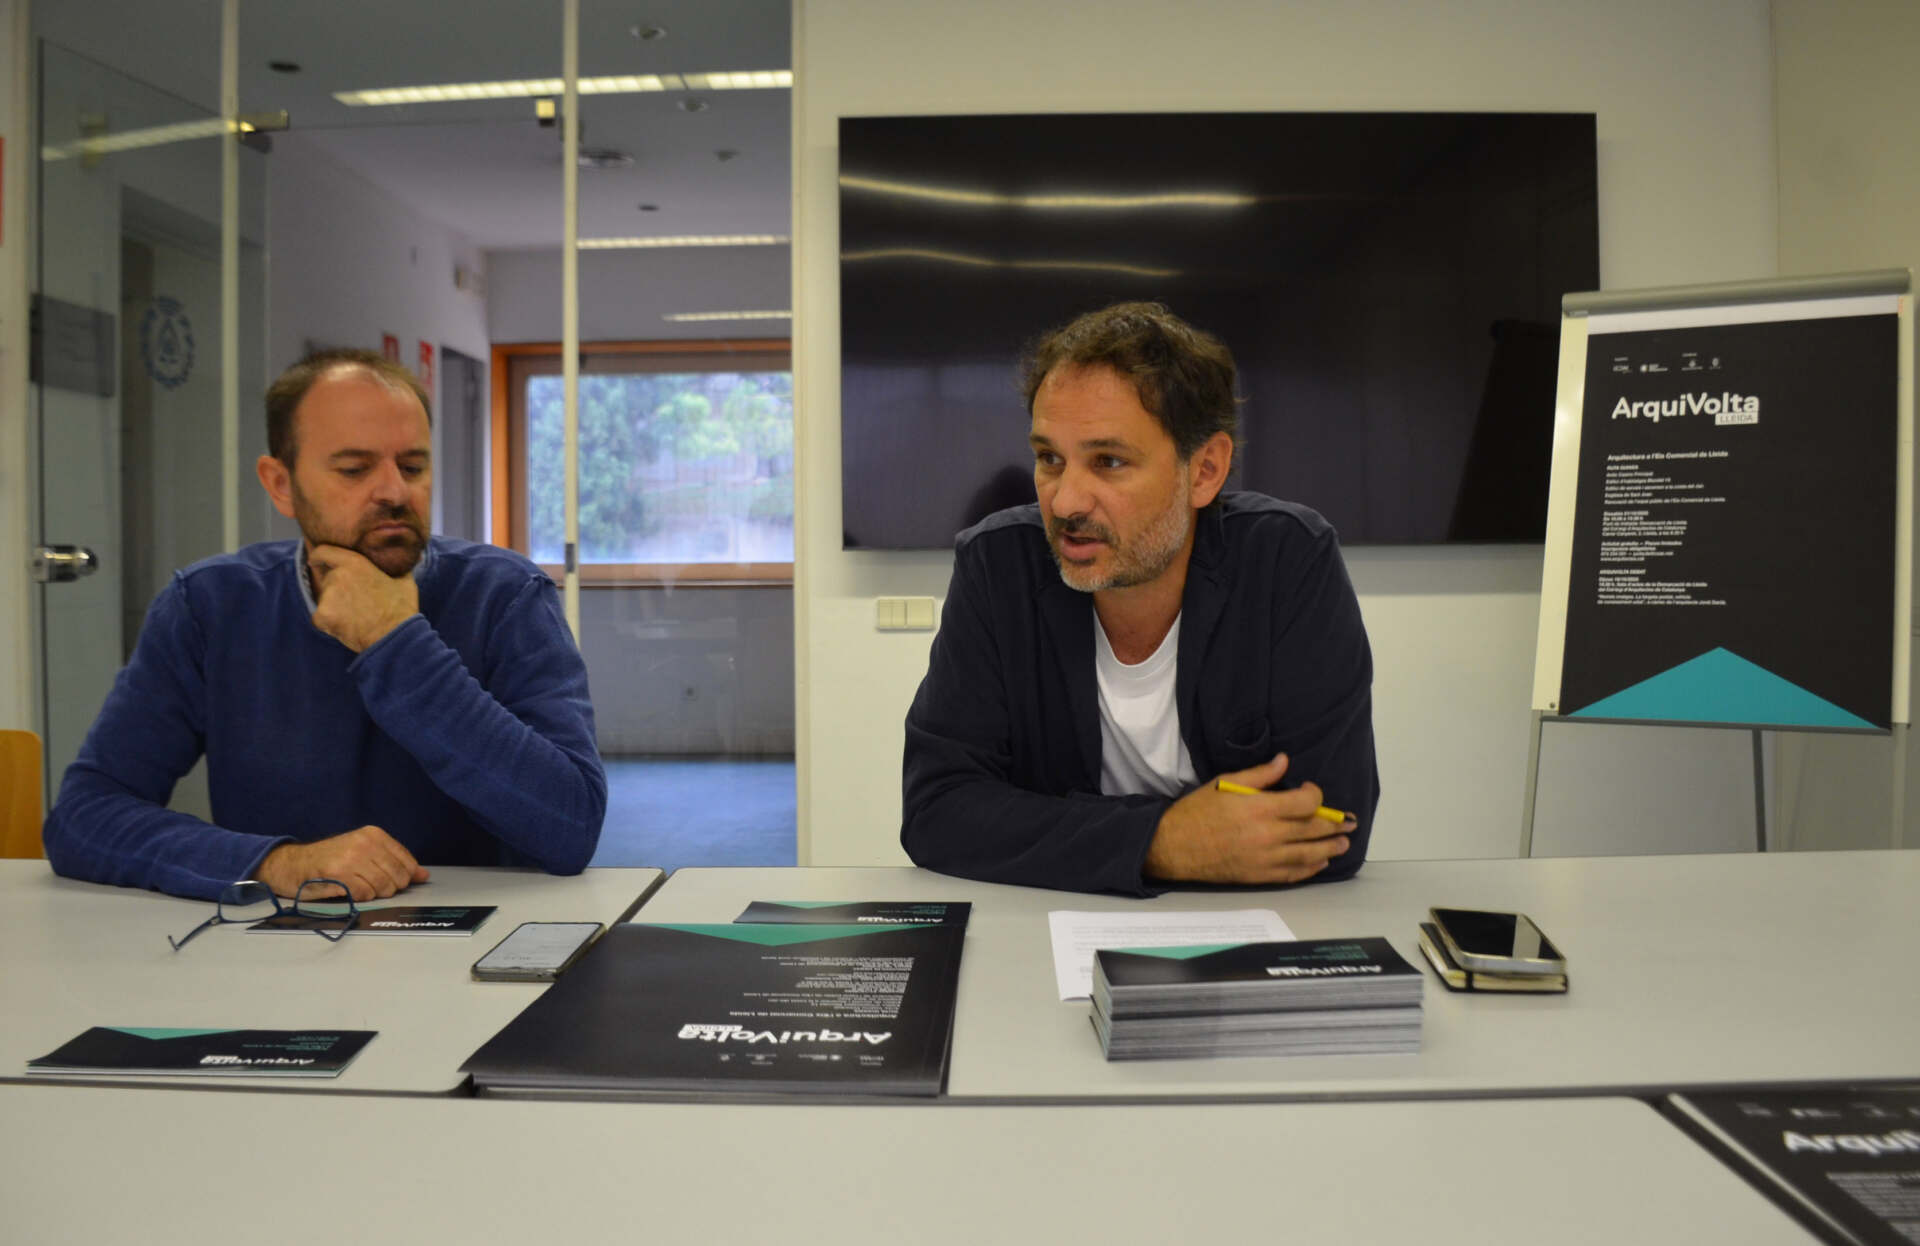 El COAC organitza una nova edició de l’Arquivolta Lleida